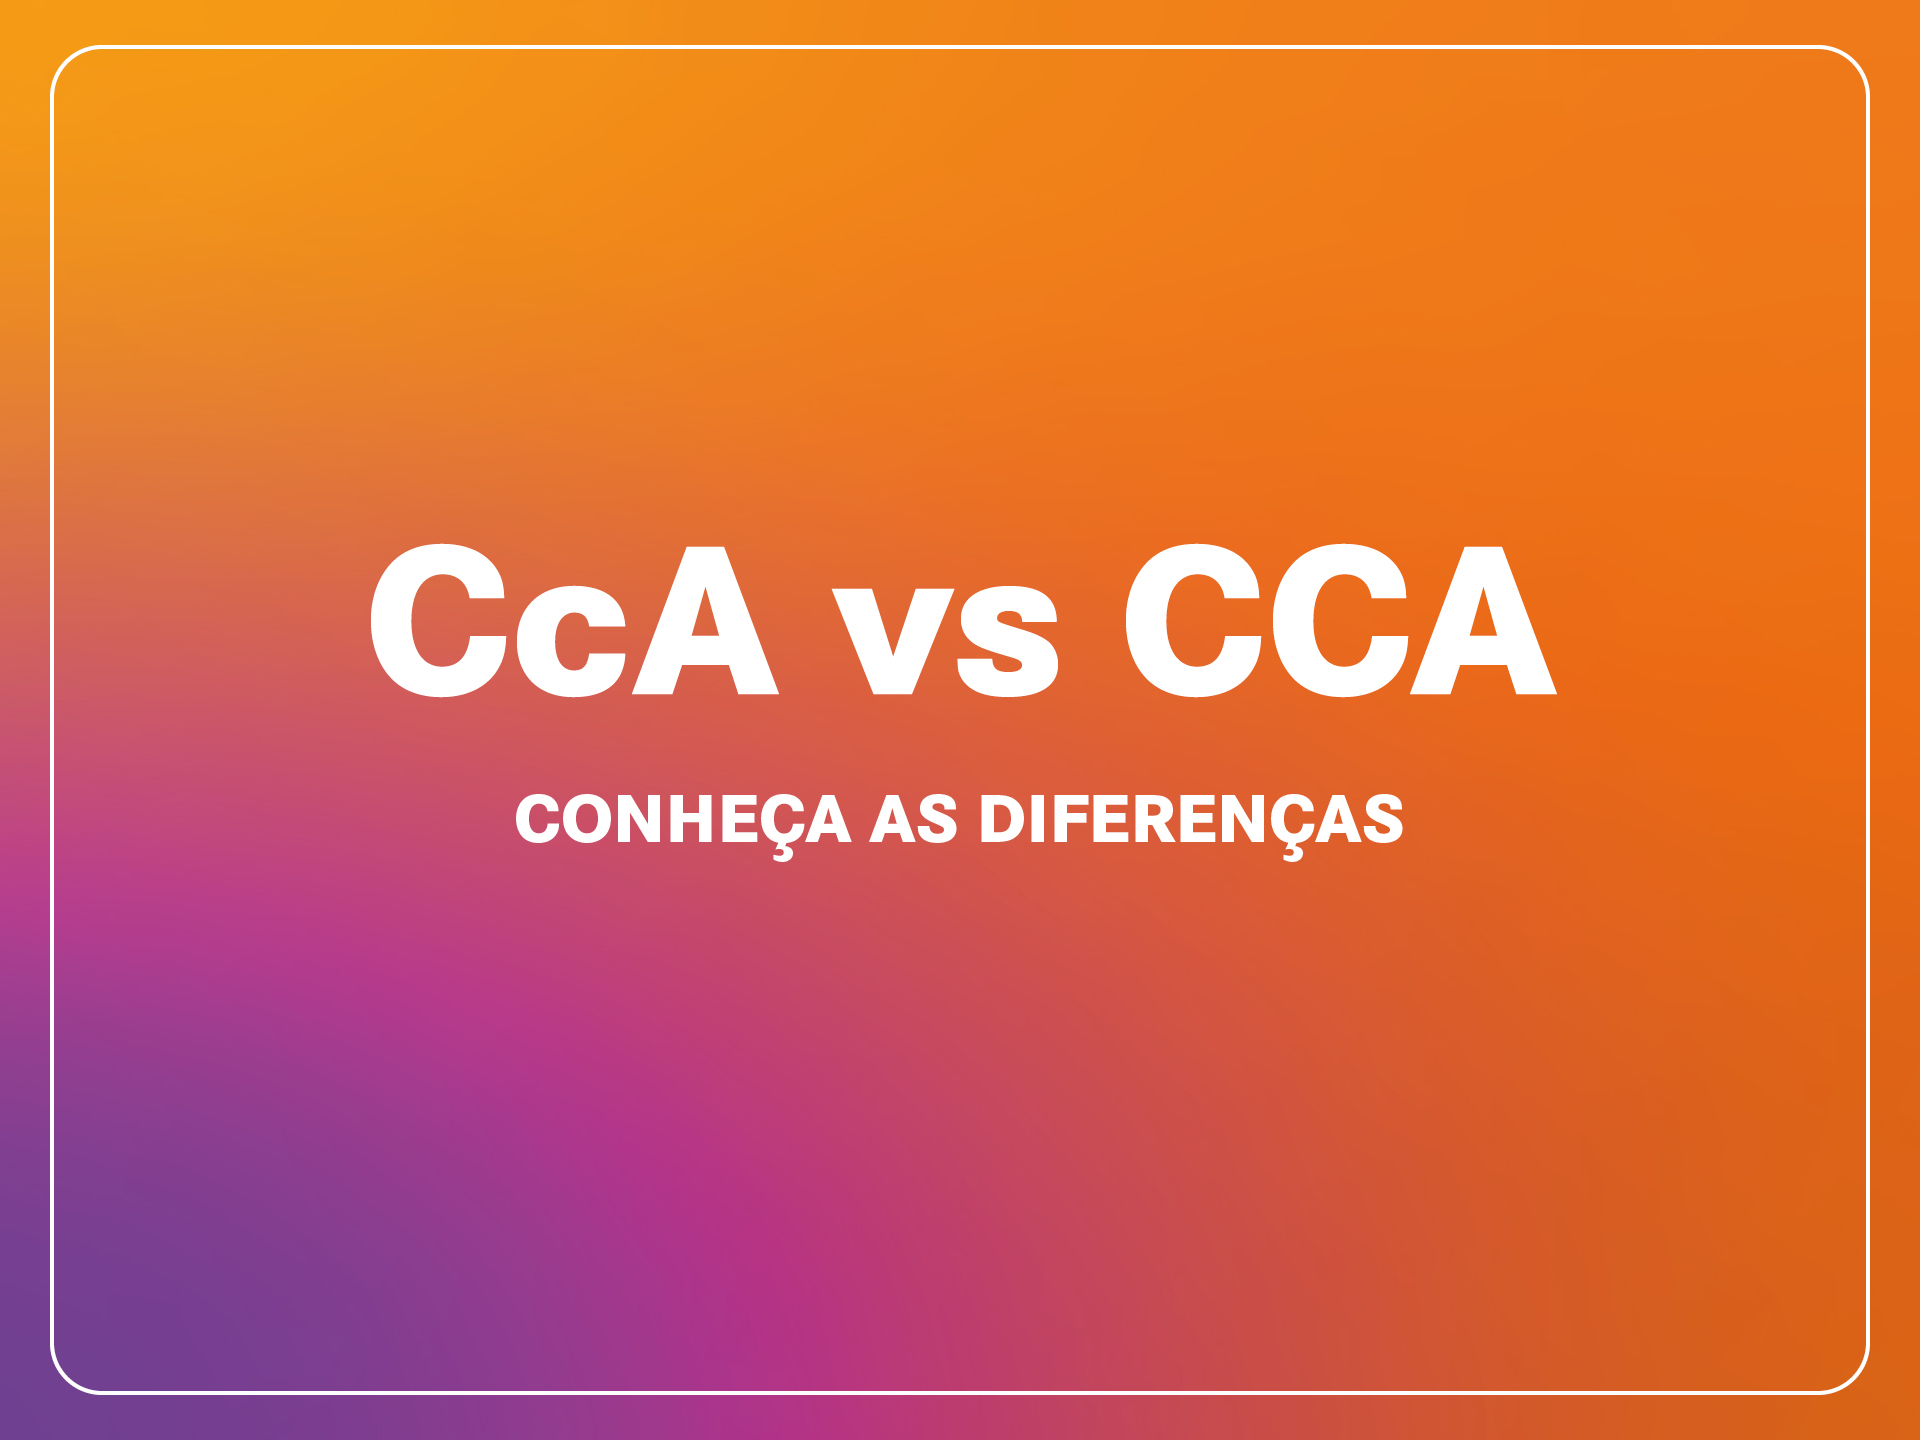 E porque Cca é diferente de CCA?